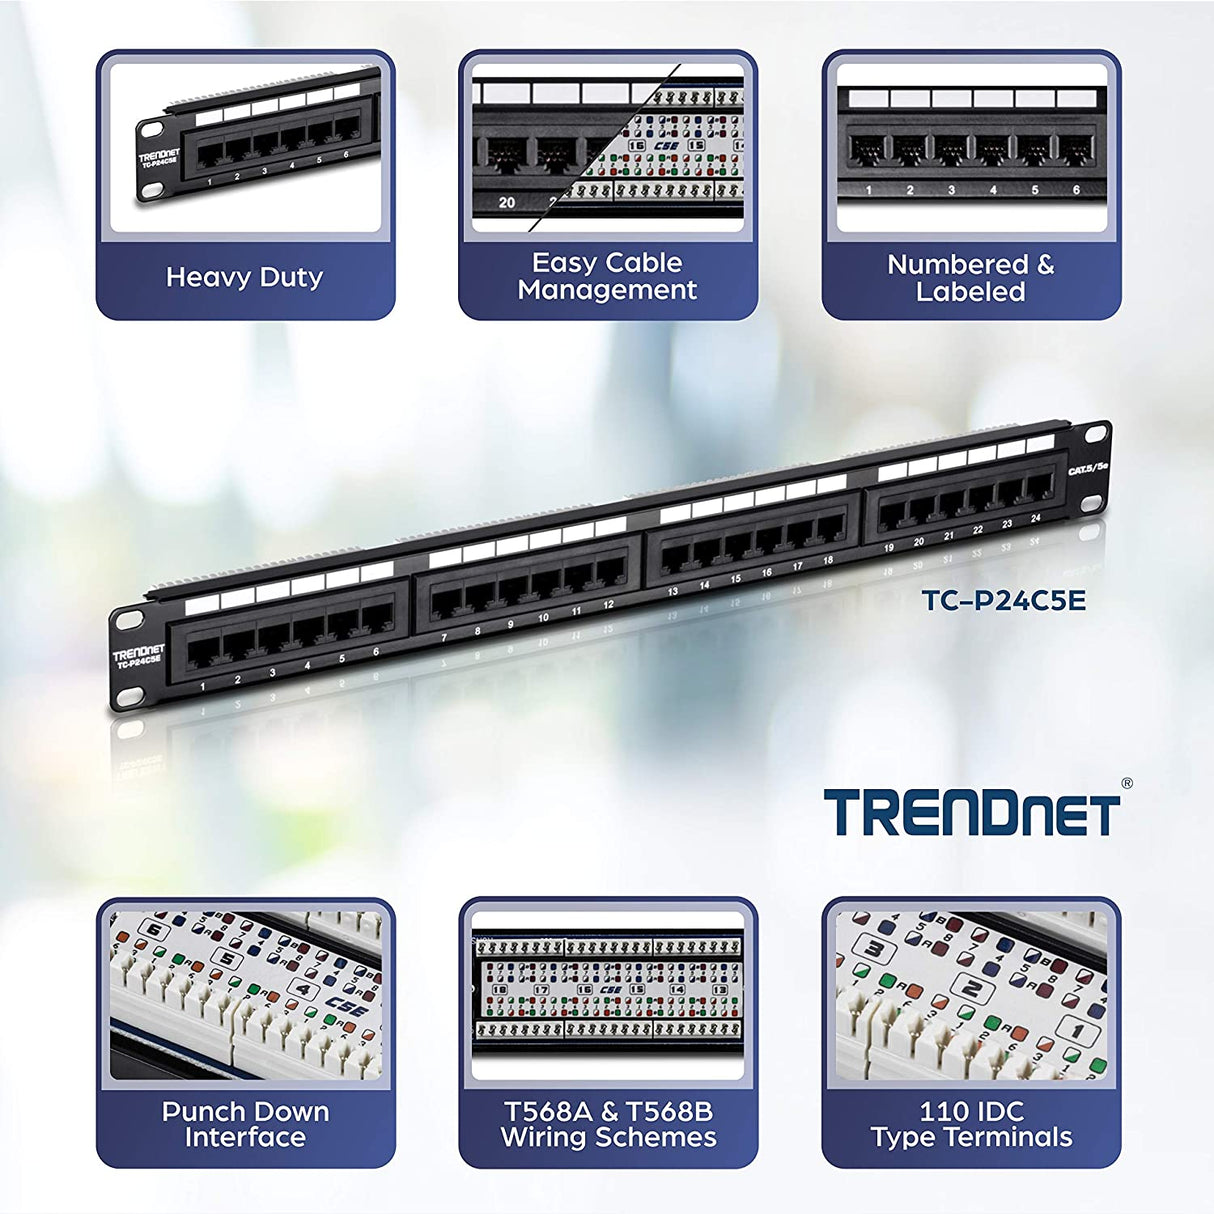 TRENDnet 24-Port Cat5-5e RJ-45 UTP Unshielded Patch Panel, Wallmount or Rackmount, 100Mhz, Color-Coded Labeling, Cat5,Cat5e,Cat4,Cat3 Compatible, 1U Rackmount, Black, TC-P24C5E